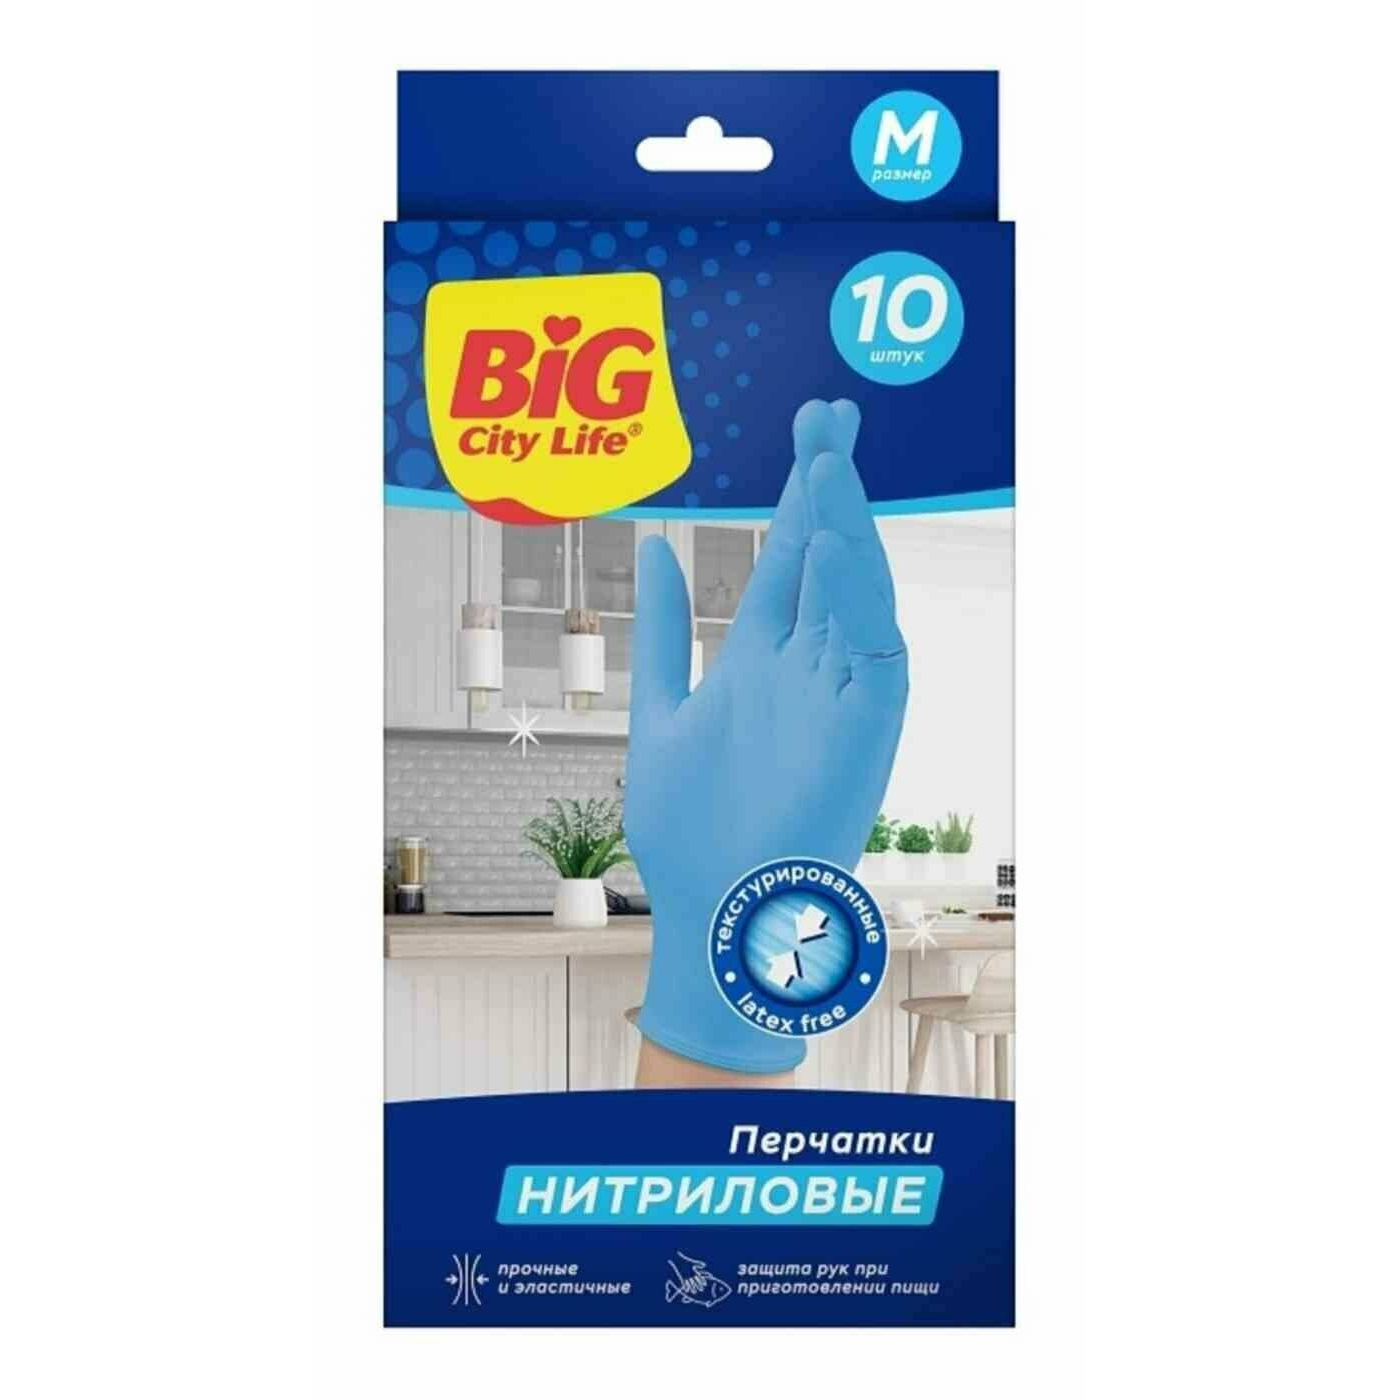 Перчатки Big City Life нитриловые синие M 10 шт, цвет синий, размер M